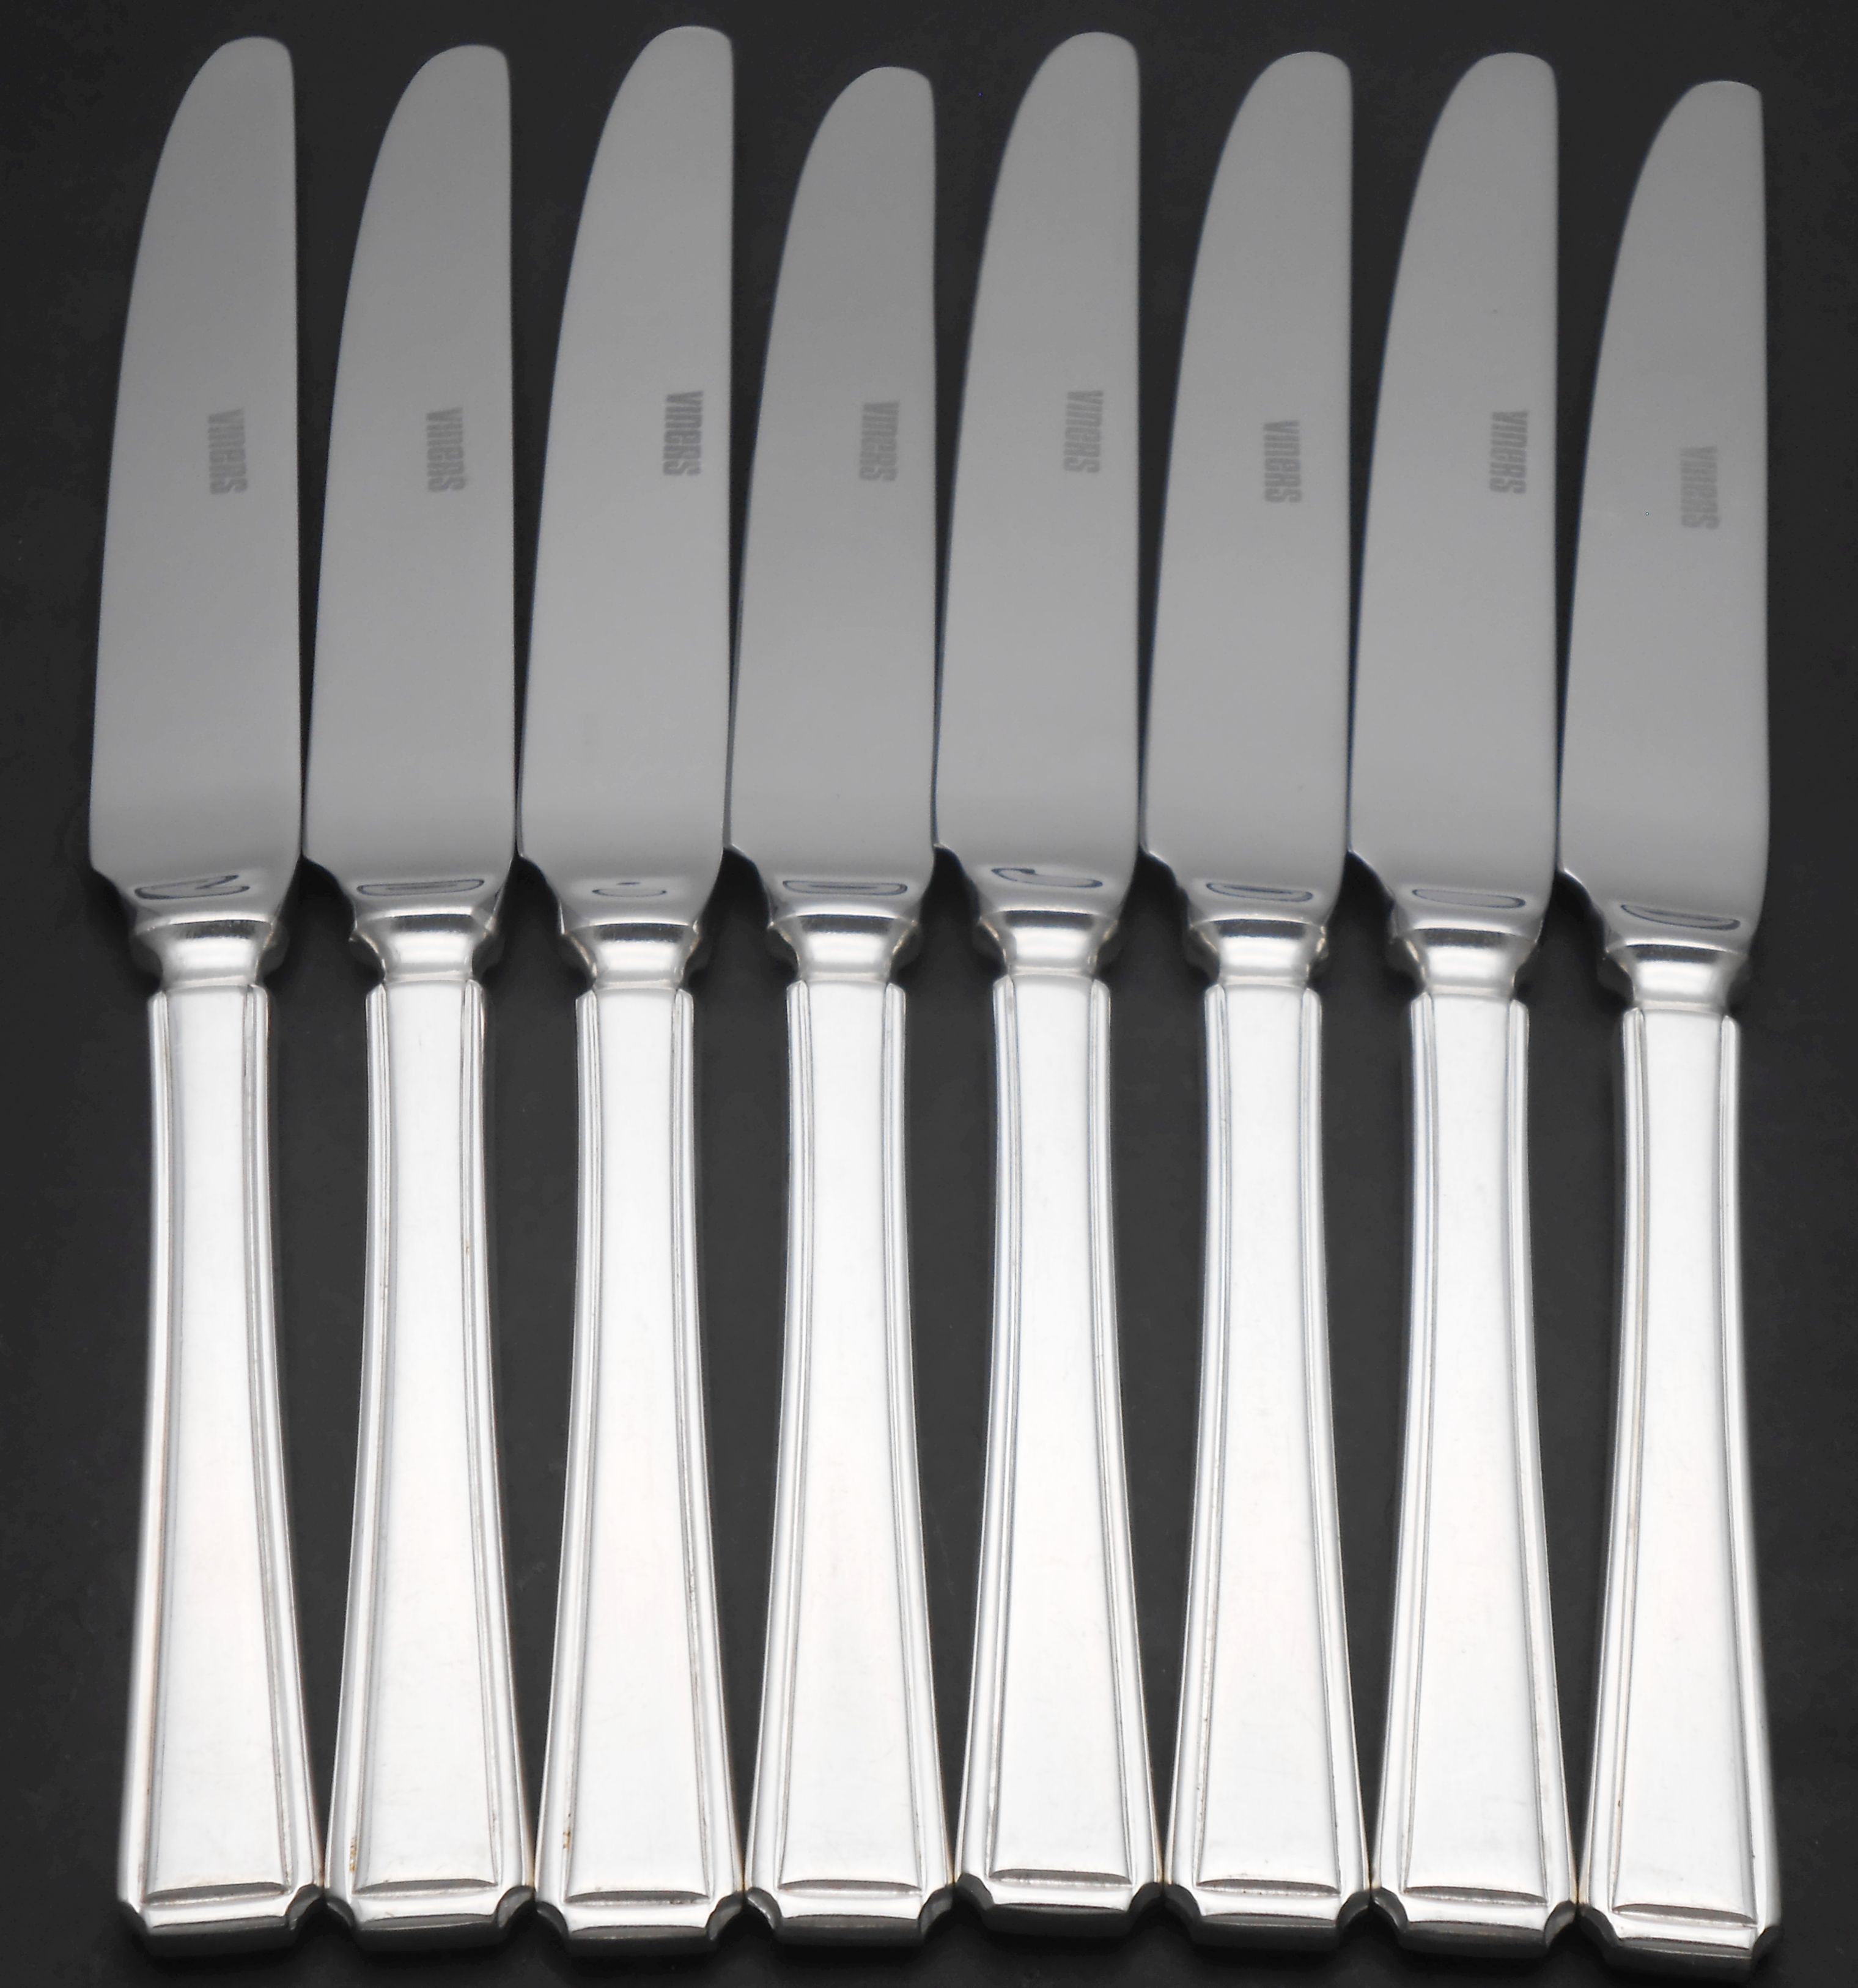 Harley pattern cutlery / flatware